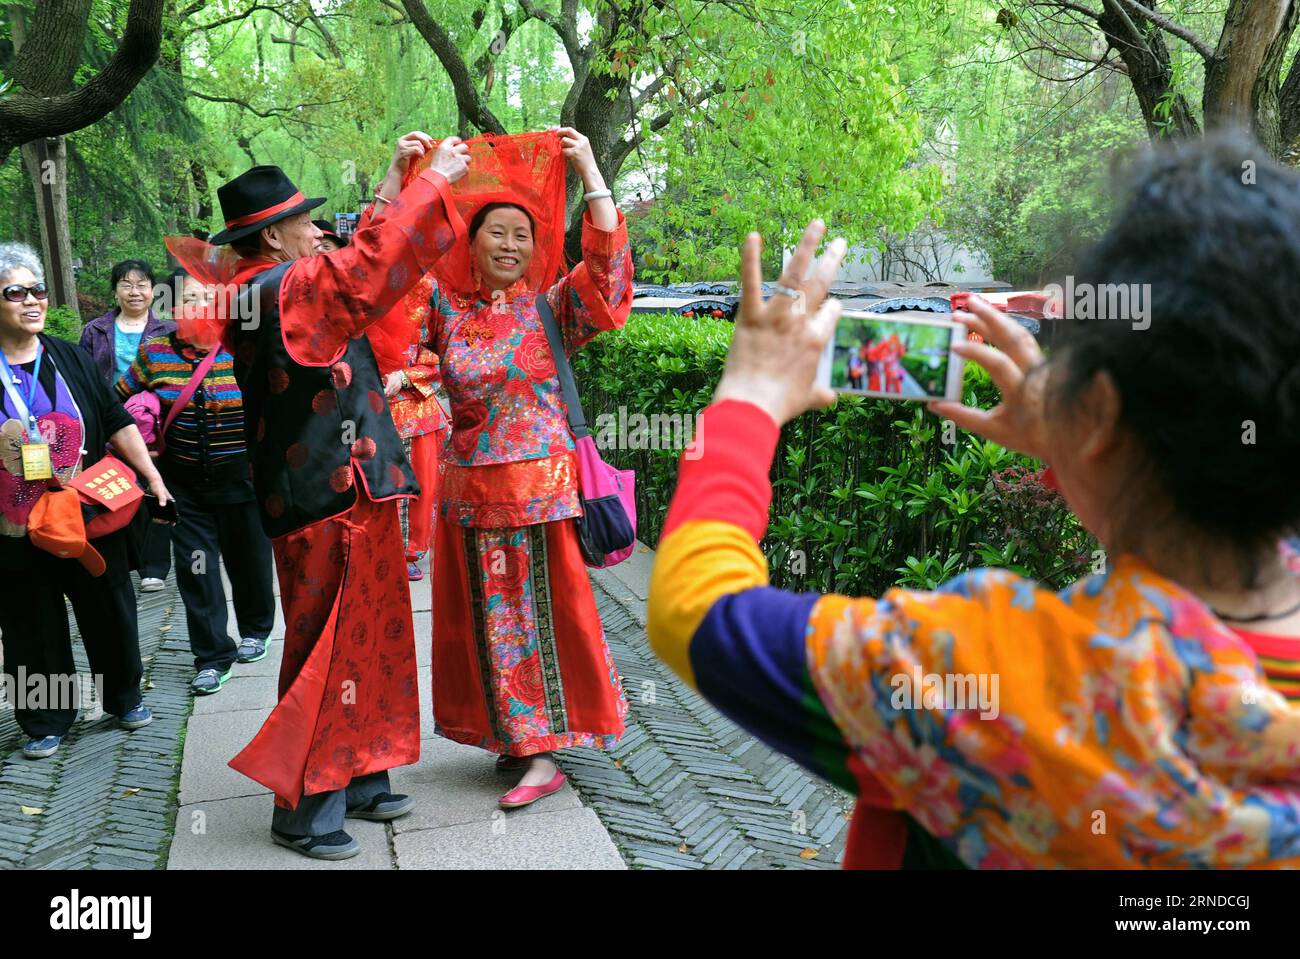 (160516) -- HANGZHOU, 16 maggio 2016 -- foto scattata l'8 aprile 2016 mostra una coppia che si esibisce per i turisti a Nanxun, un'antica città sul mare nella città di Huzhou, nella provincia di Zhejiang nella Cina orientale. Zhejiang ha accelerato la sua industria turistica come alcune città e villaggi sono stati sviluppati dove le persone potevano godere il ritmo rilassato della vita durante le loro vacanze. ) (Wyl) CHINA-ZHEJIANG-TOURISM-NEW LIFESTYLE (CN) TanxJin PUBLICATIONxNOTxINxCHN Hangzhou 16 maggio 2016 la foto scattata L'8 aprile 2016 mostra una COPPIA che si esibisce per i turisti a Nanxun all'antica città sul lungomare nella città di Huzhou nella provincia dello Zhejiang della Cina orientale Foto Stock